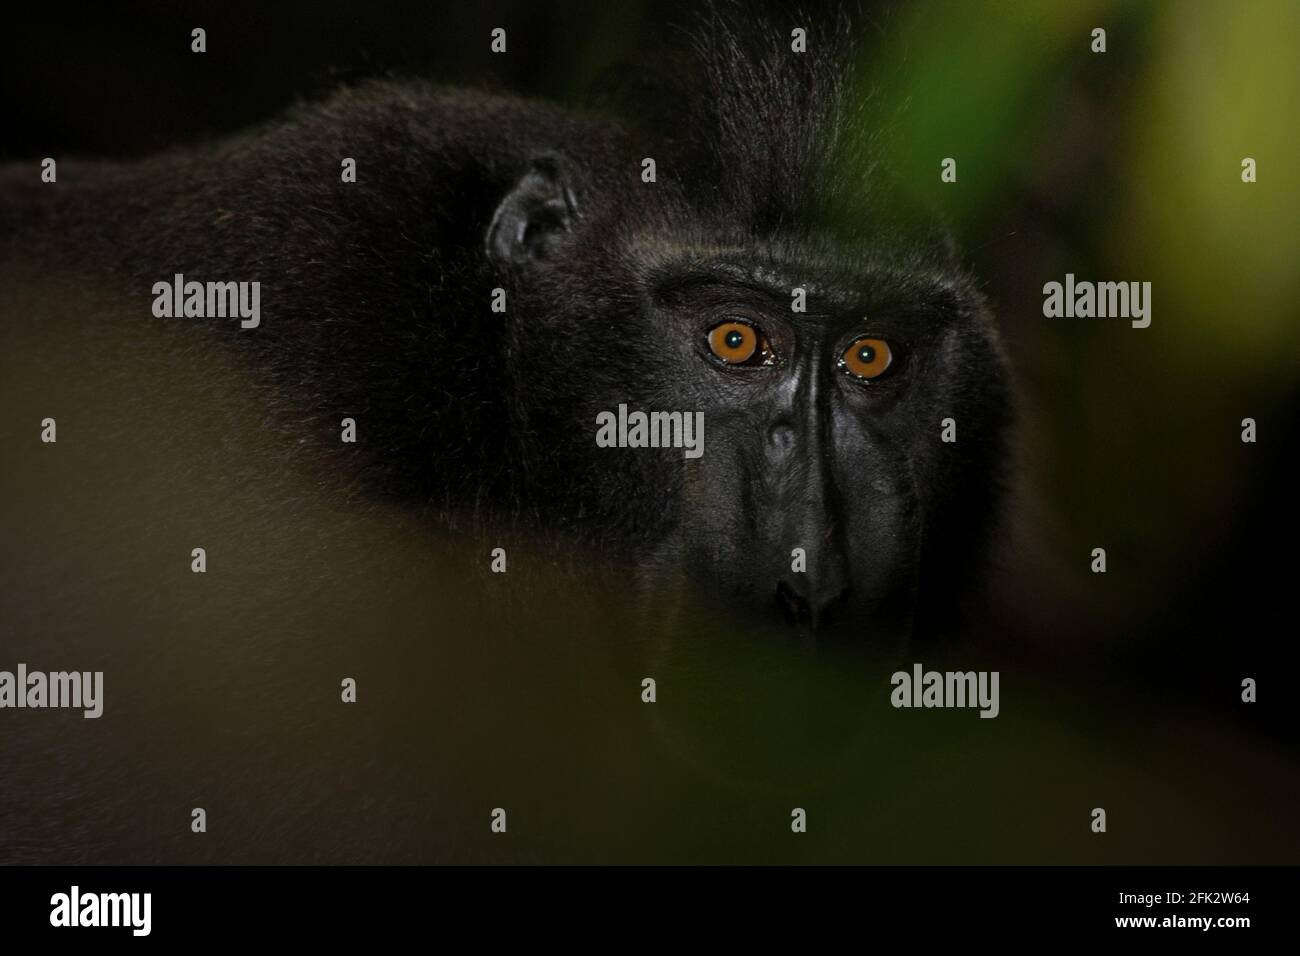 Celebes macaque crestato in pausa dal foraging, fissando attraverso le foglie. Piantare alberi da frutto nella zona tra foresta e paesaggio agricolo contribuirebbe a ridurre i conflitti uomo-scimmia, secondo Reyni Palohoen, coordinatore di progetto di Selamatkan Yaki (Save Yaki) all'inizio di questo mese, rispondendo all'invasione di scimmie di terreni agricoli nella reggenza del Minahasa meridionale, Sulawesi settentrionale, Indonesia. Foto Stock